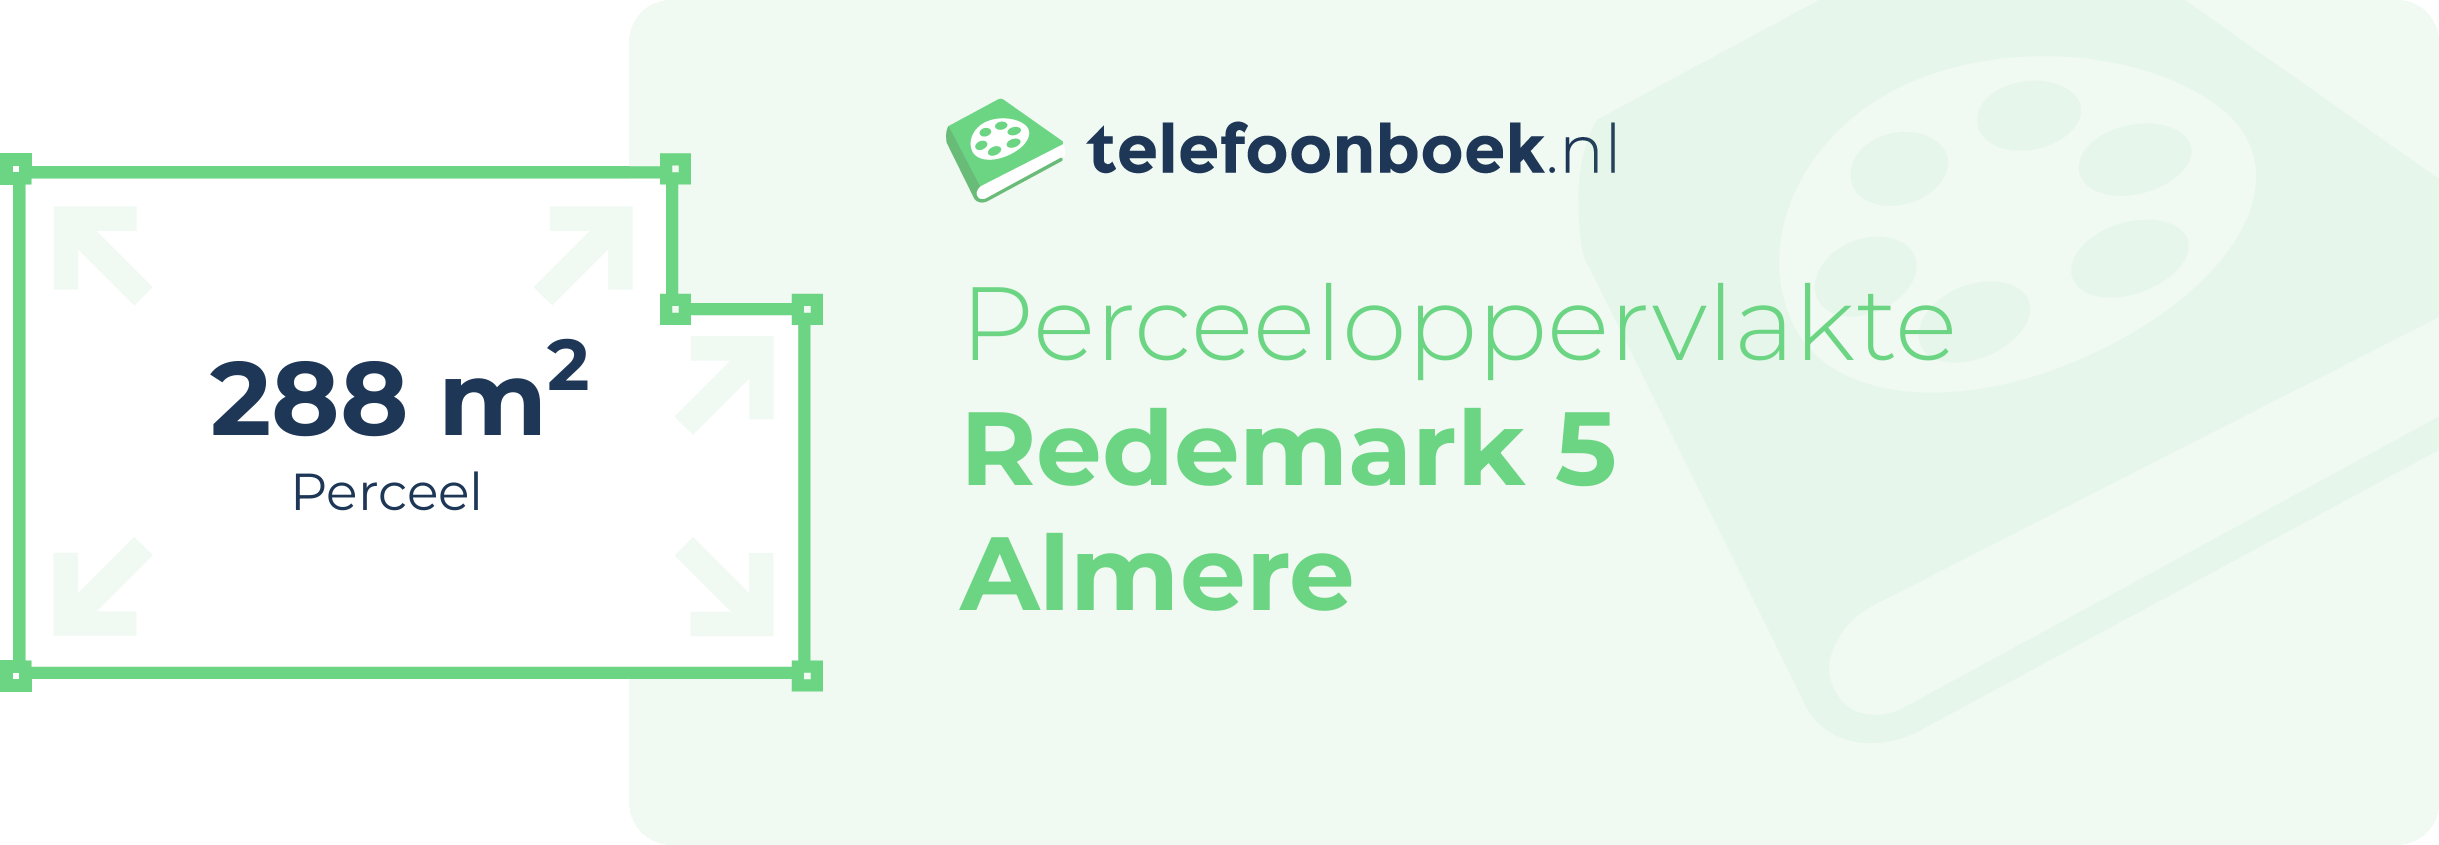 Perceeloppervlakte Redemark 5 Almere